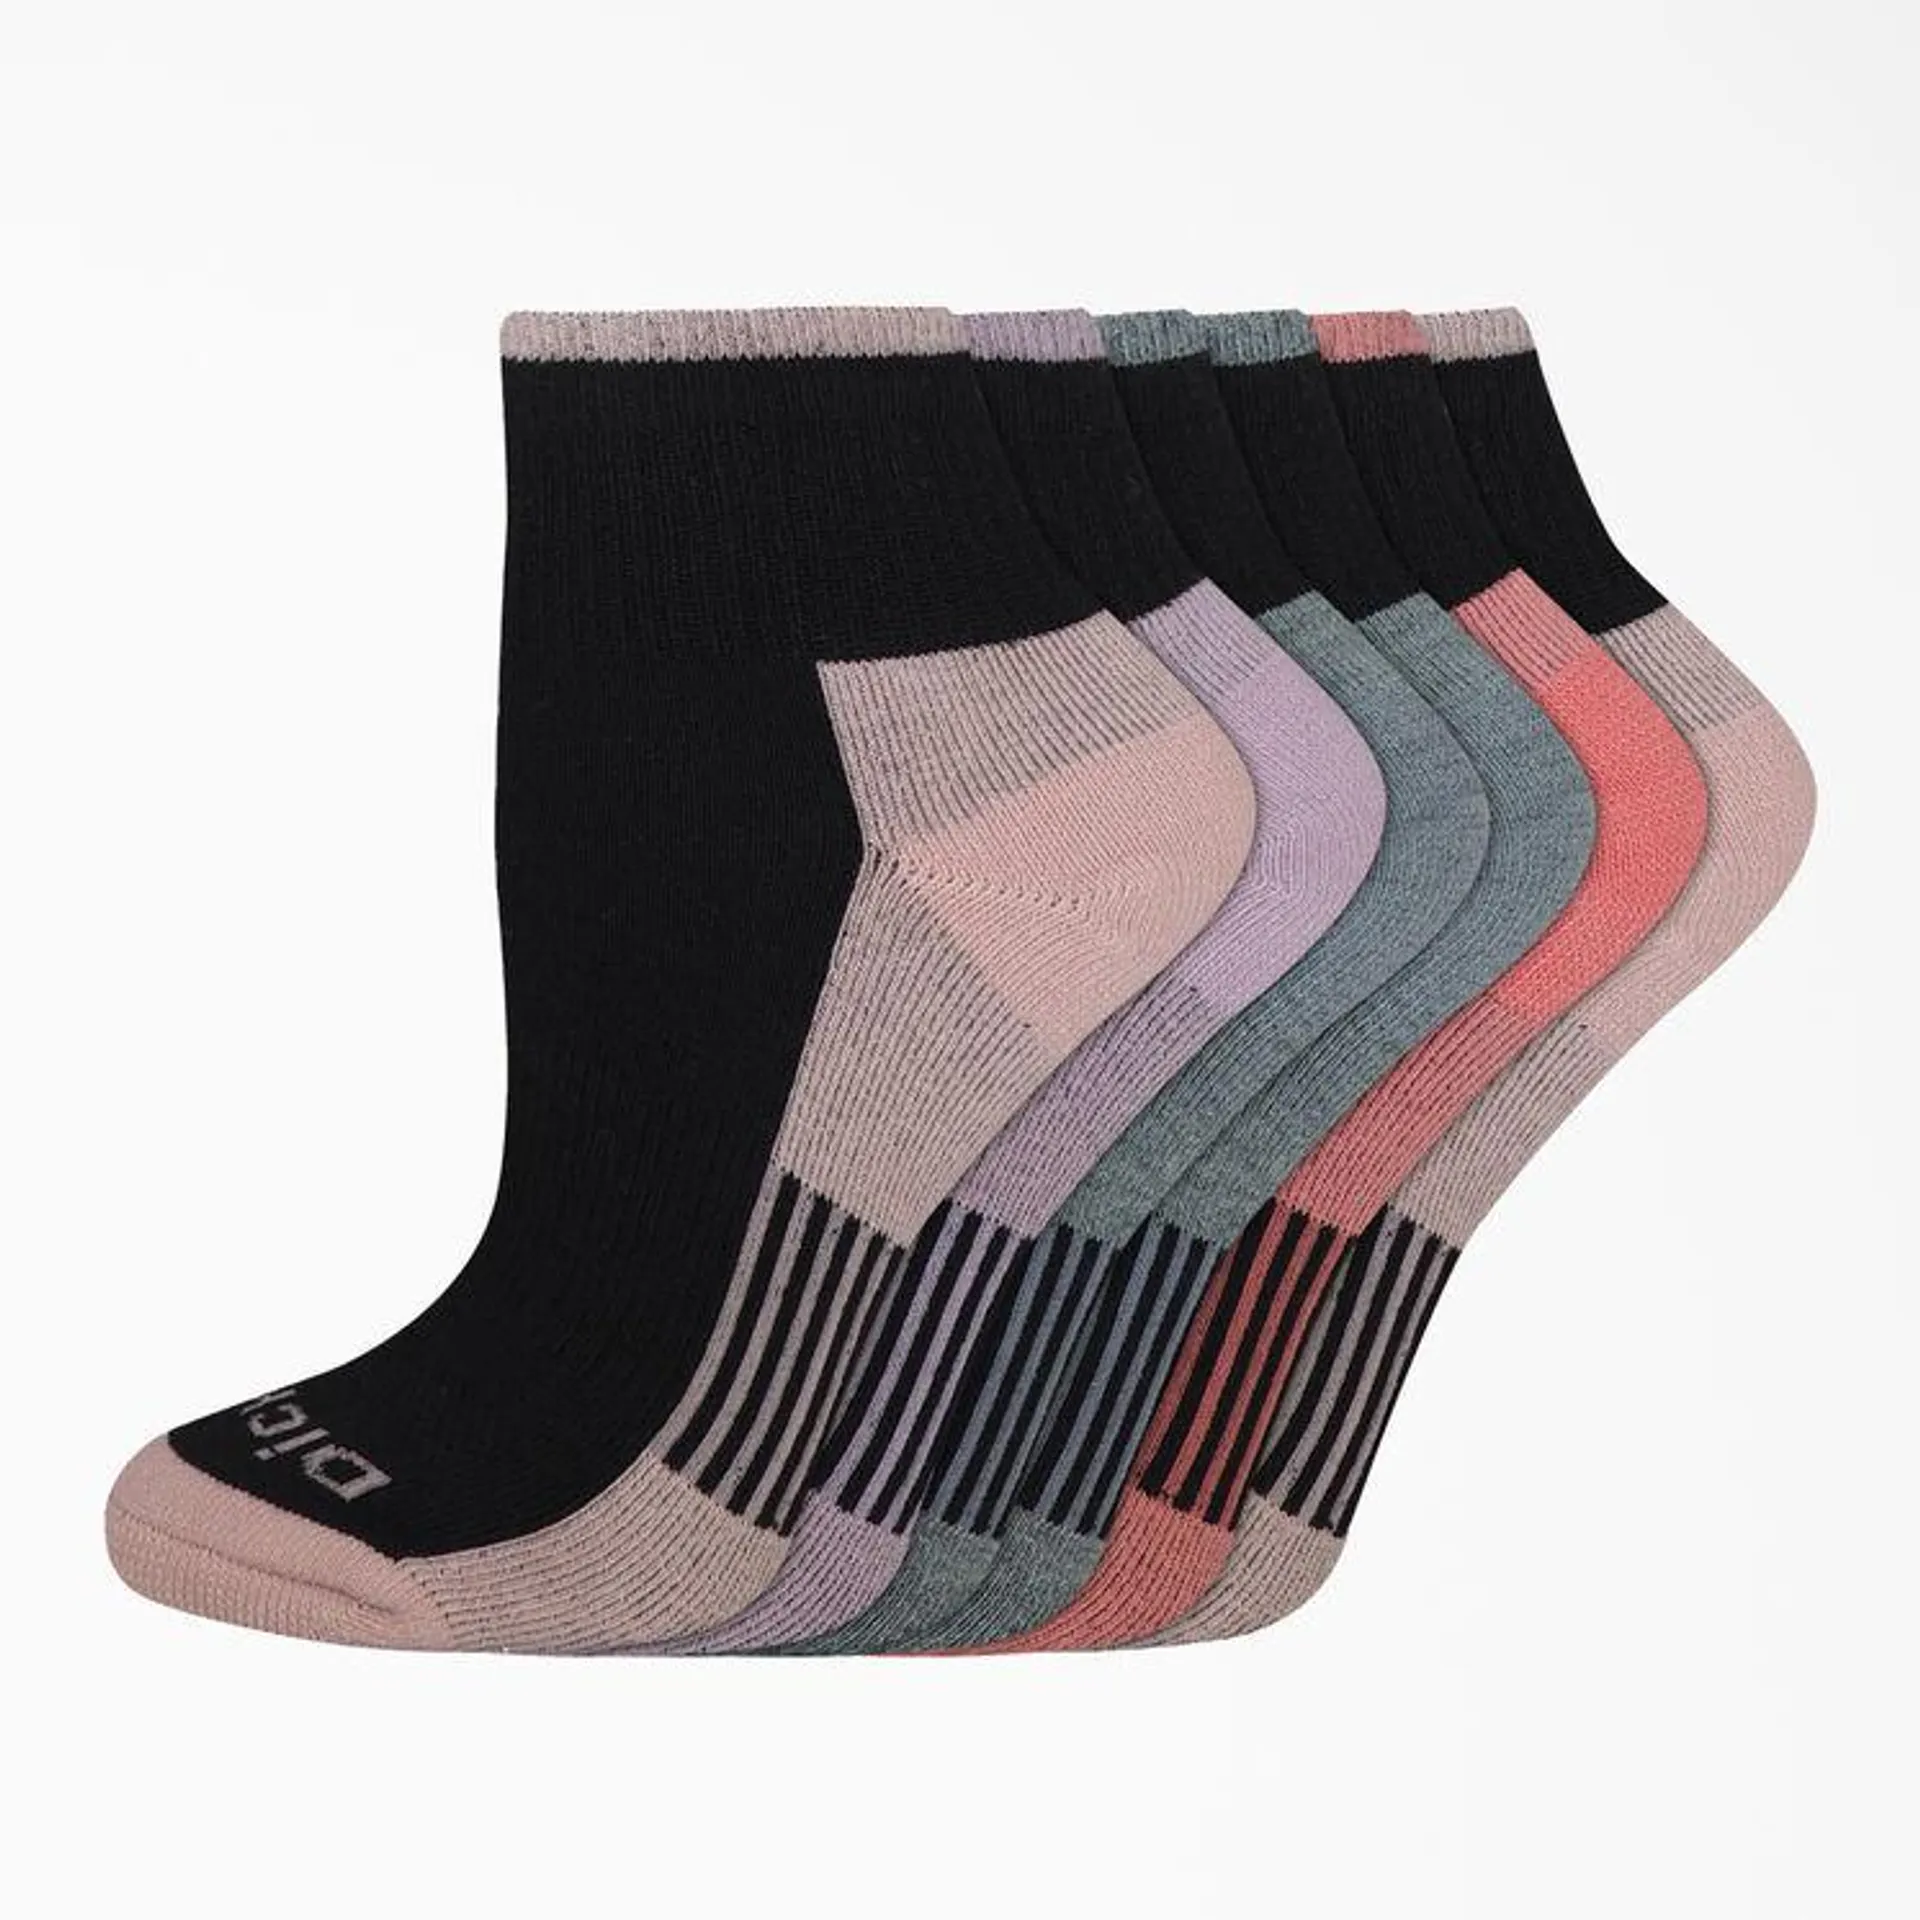 Women's Dri-Tech Quarter Socks, Size 6-9, 6-Pack, Black Combo